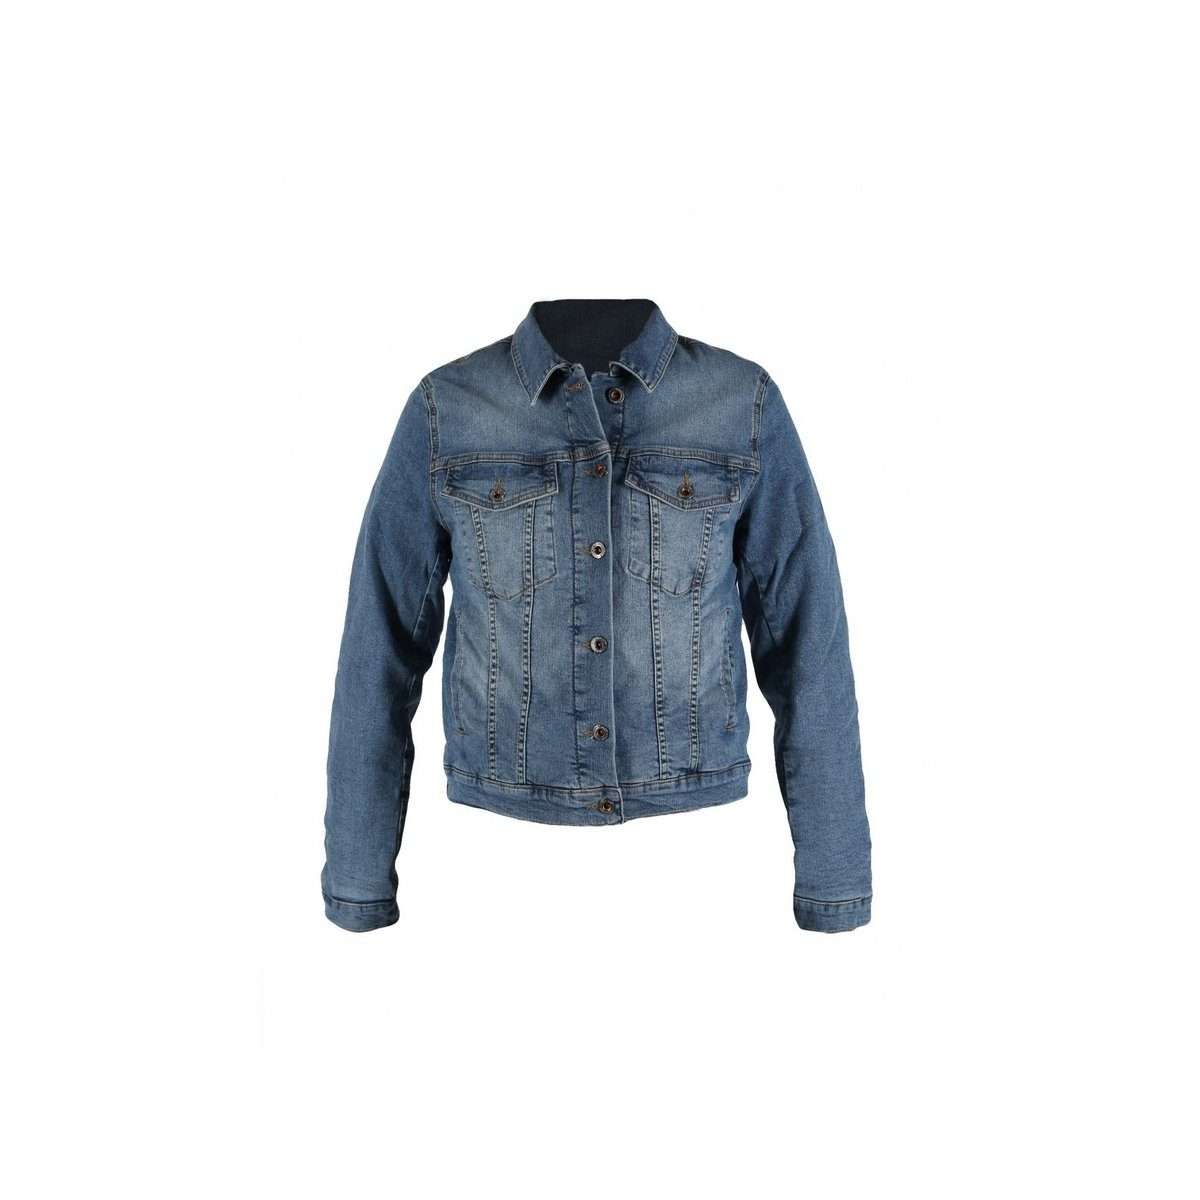 Джинсовая куртка синяя (1 шт)